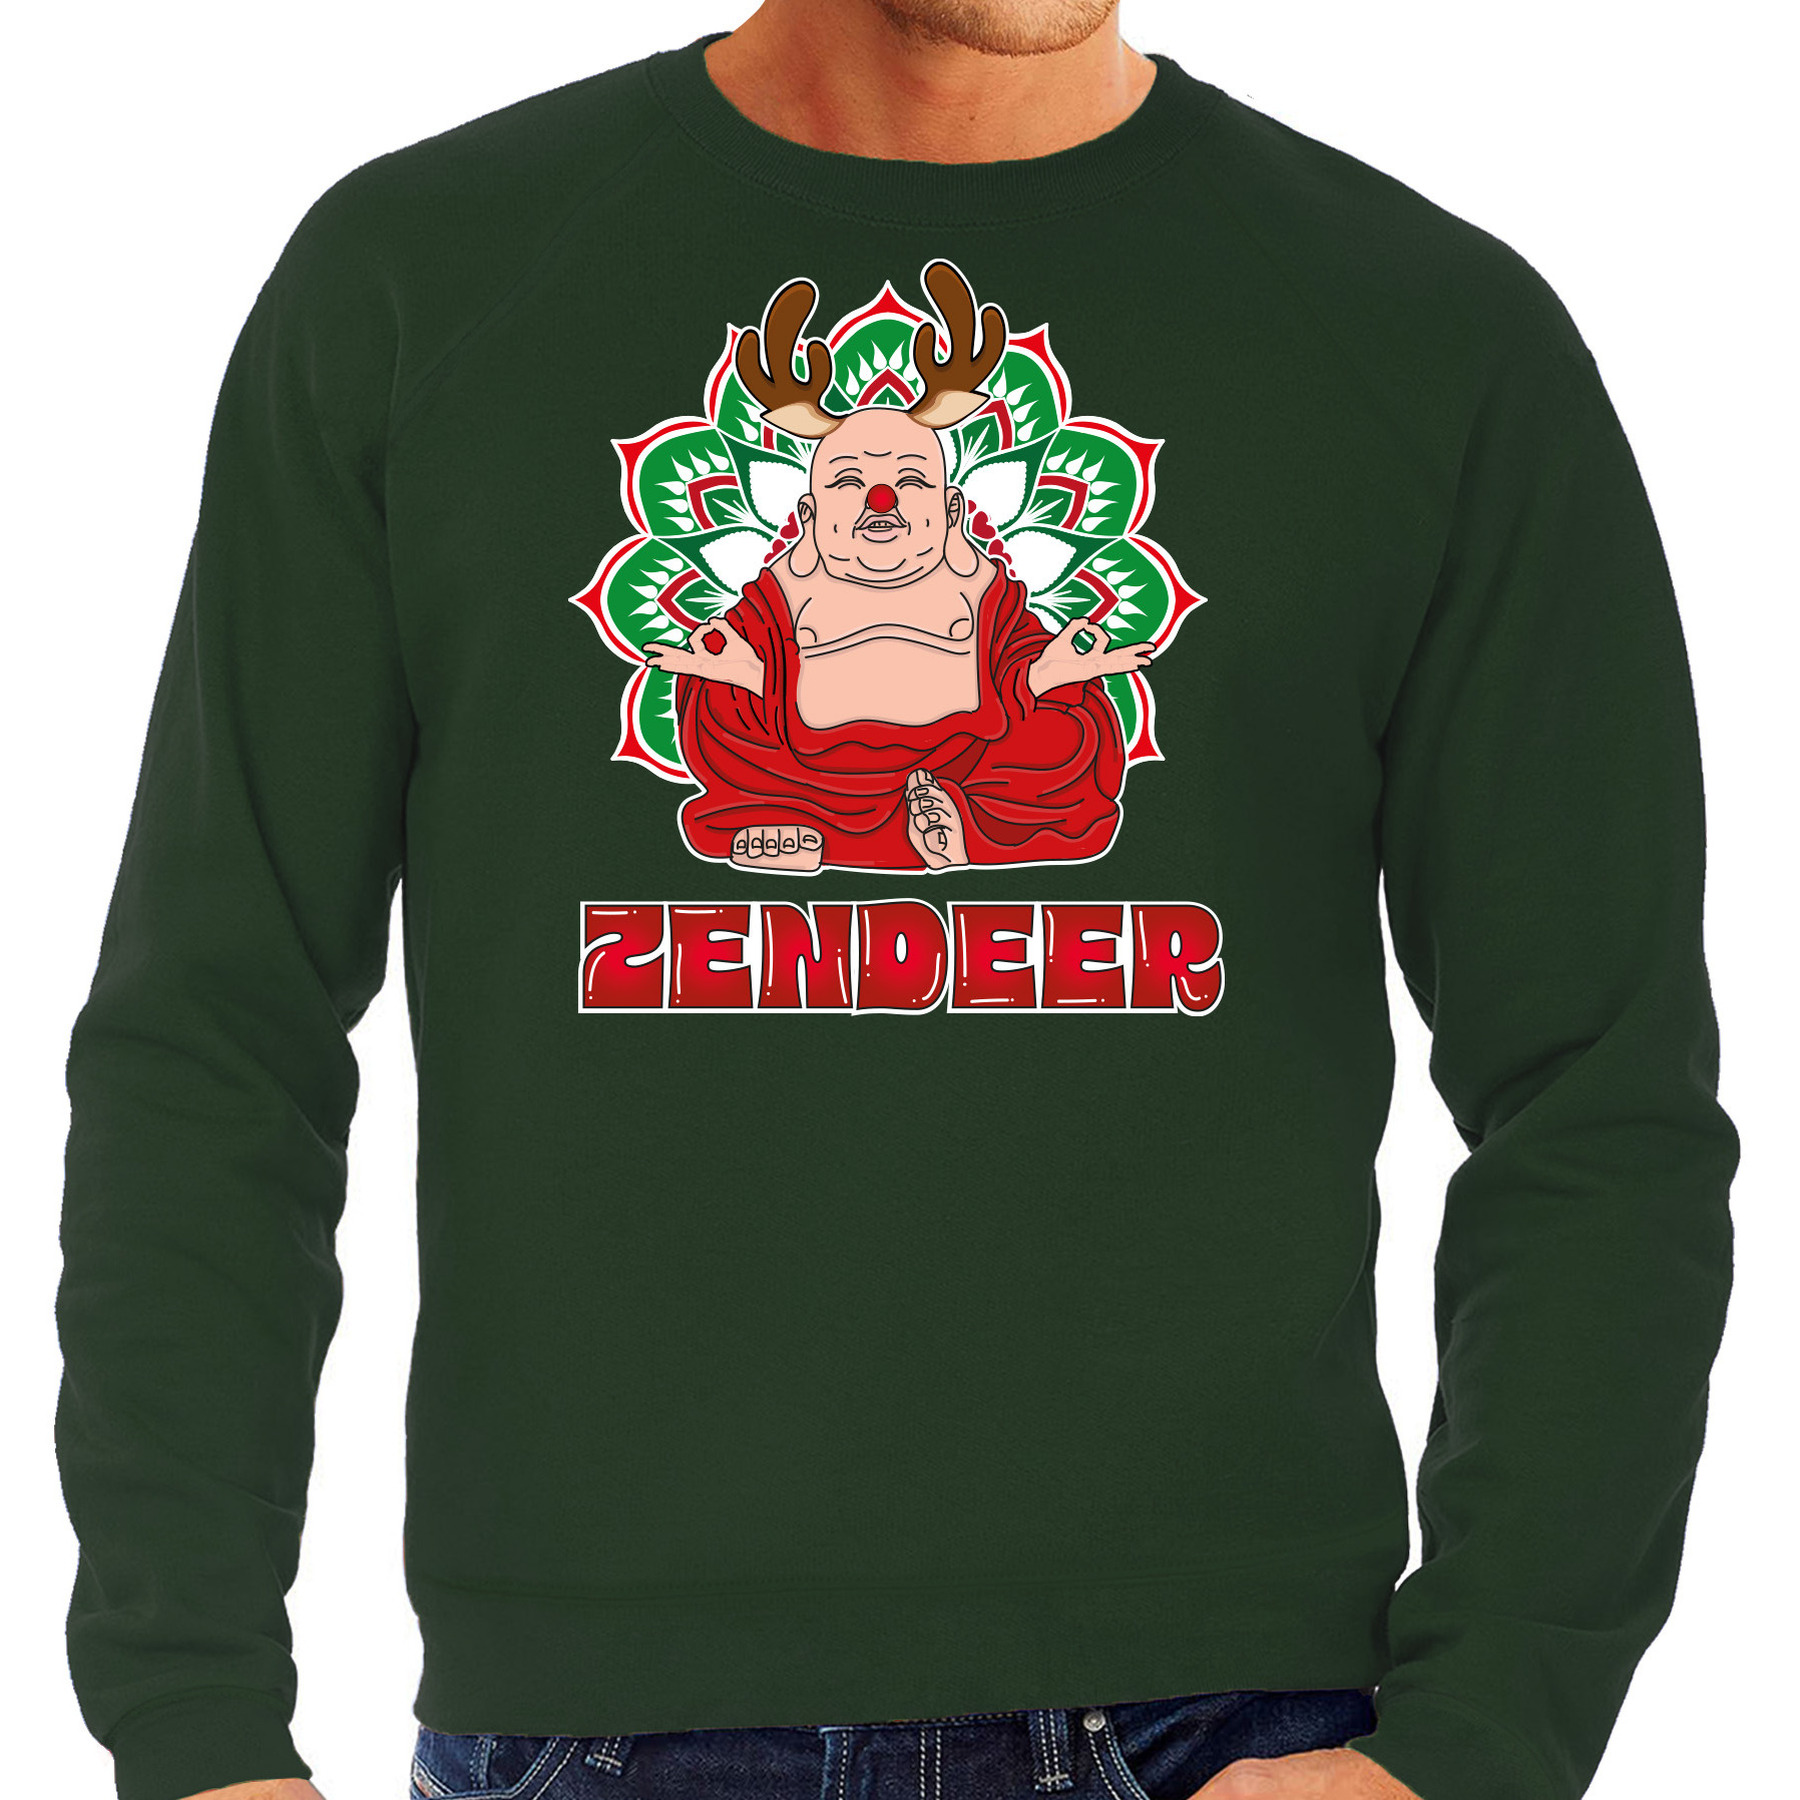 Foute Kersttrui-sweater voor heren zendeer buddha groen rendier boeddha zen